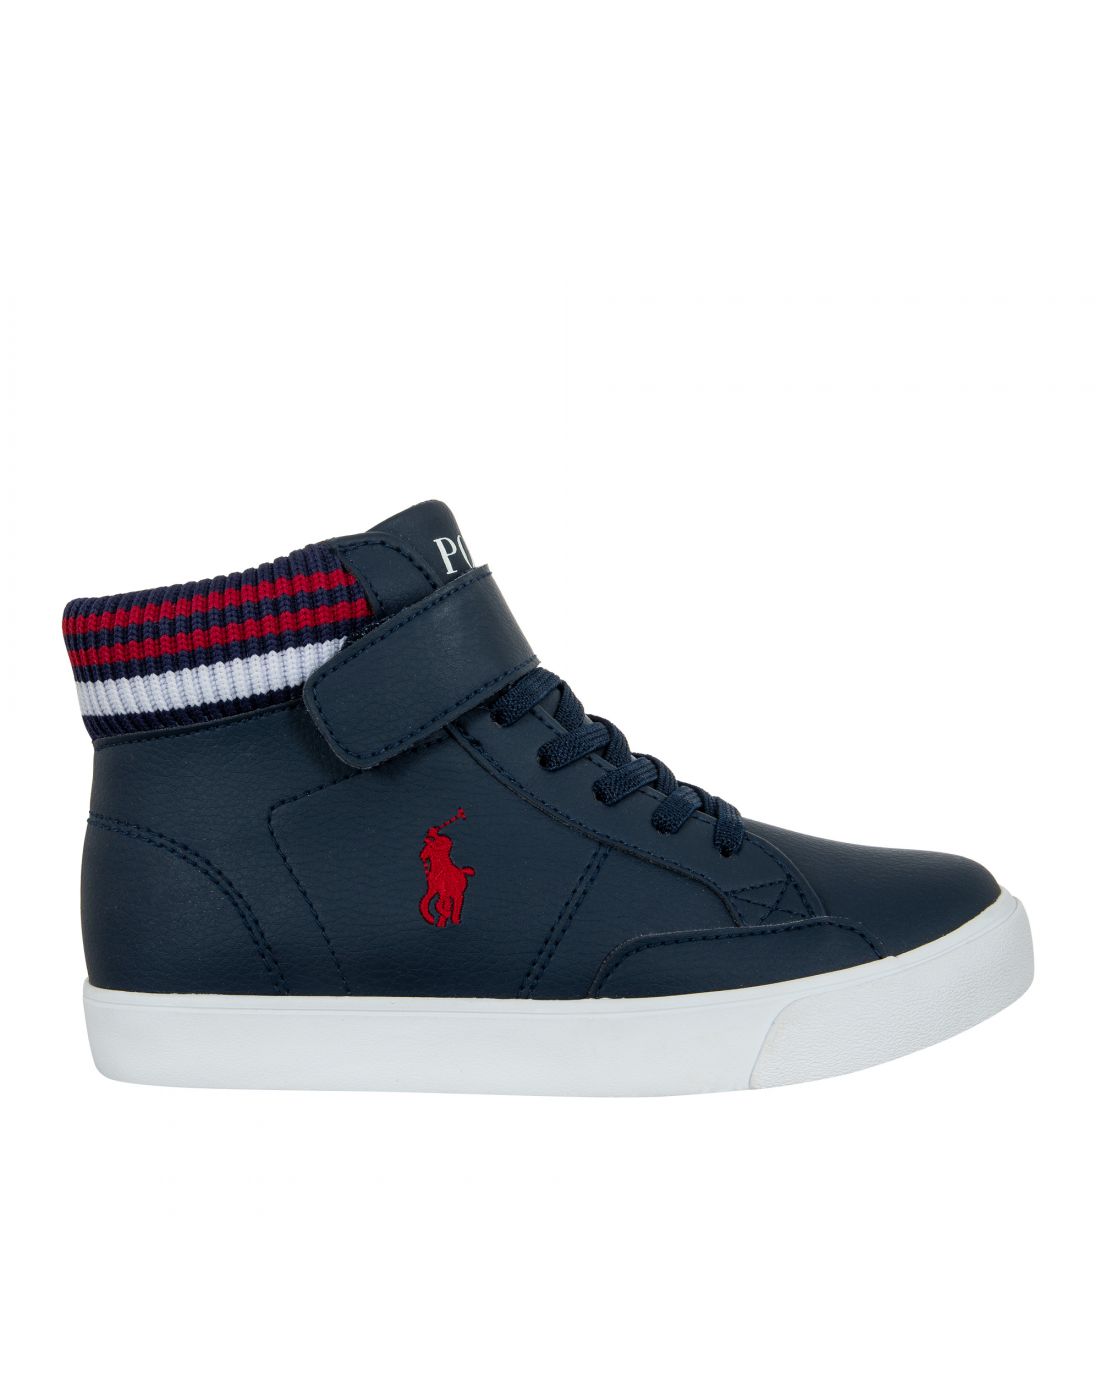 Παιδικά Μποτάκια Sneakers Polo Ralph Lauren, Polo Ralph Lauren, 23265401 |  LapinKids.com | LAPIN KIDS